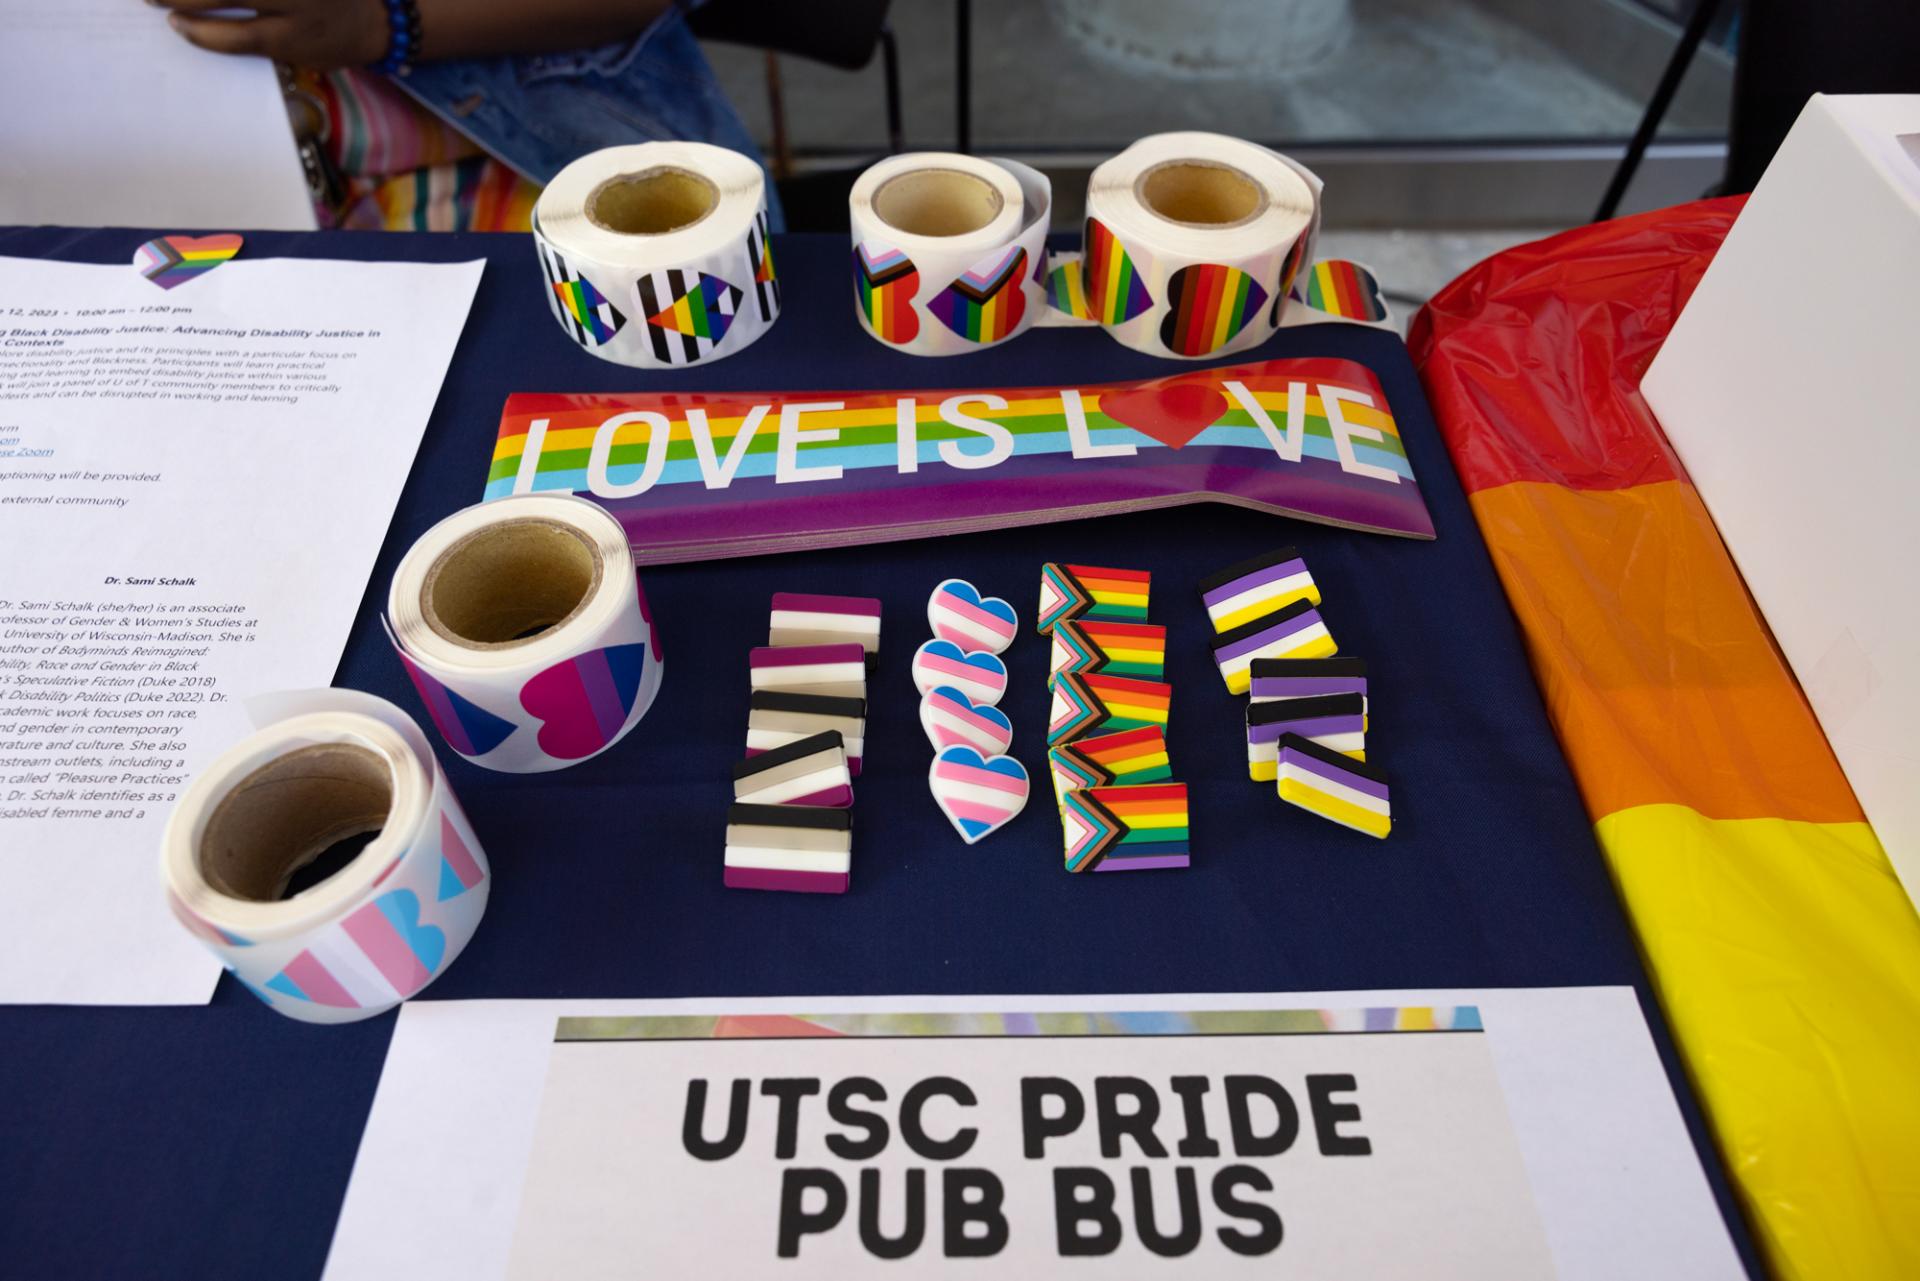 UTSC Pride Pub Bus sign